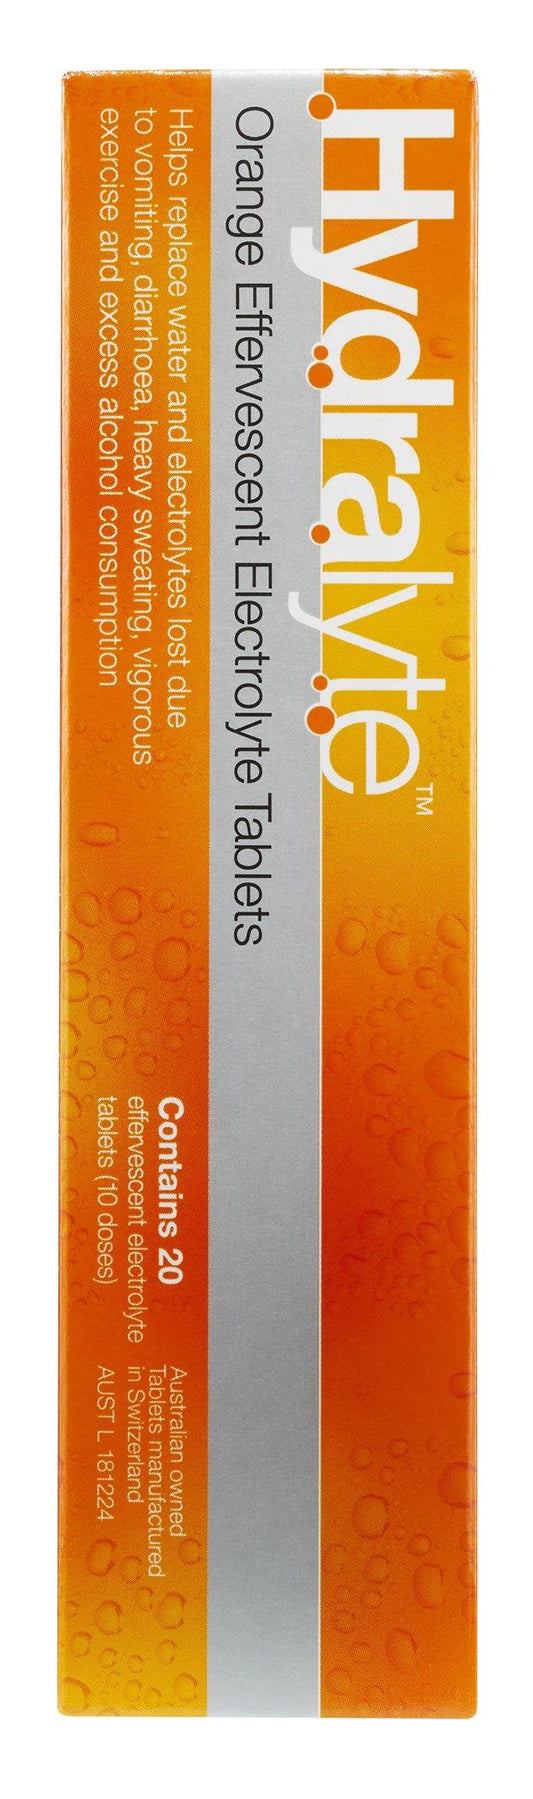 Hydralyte Effervescent Electrolyte Tablets 20 pk Orange